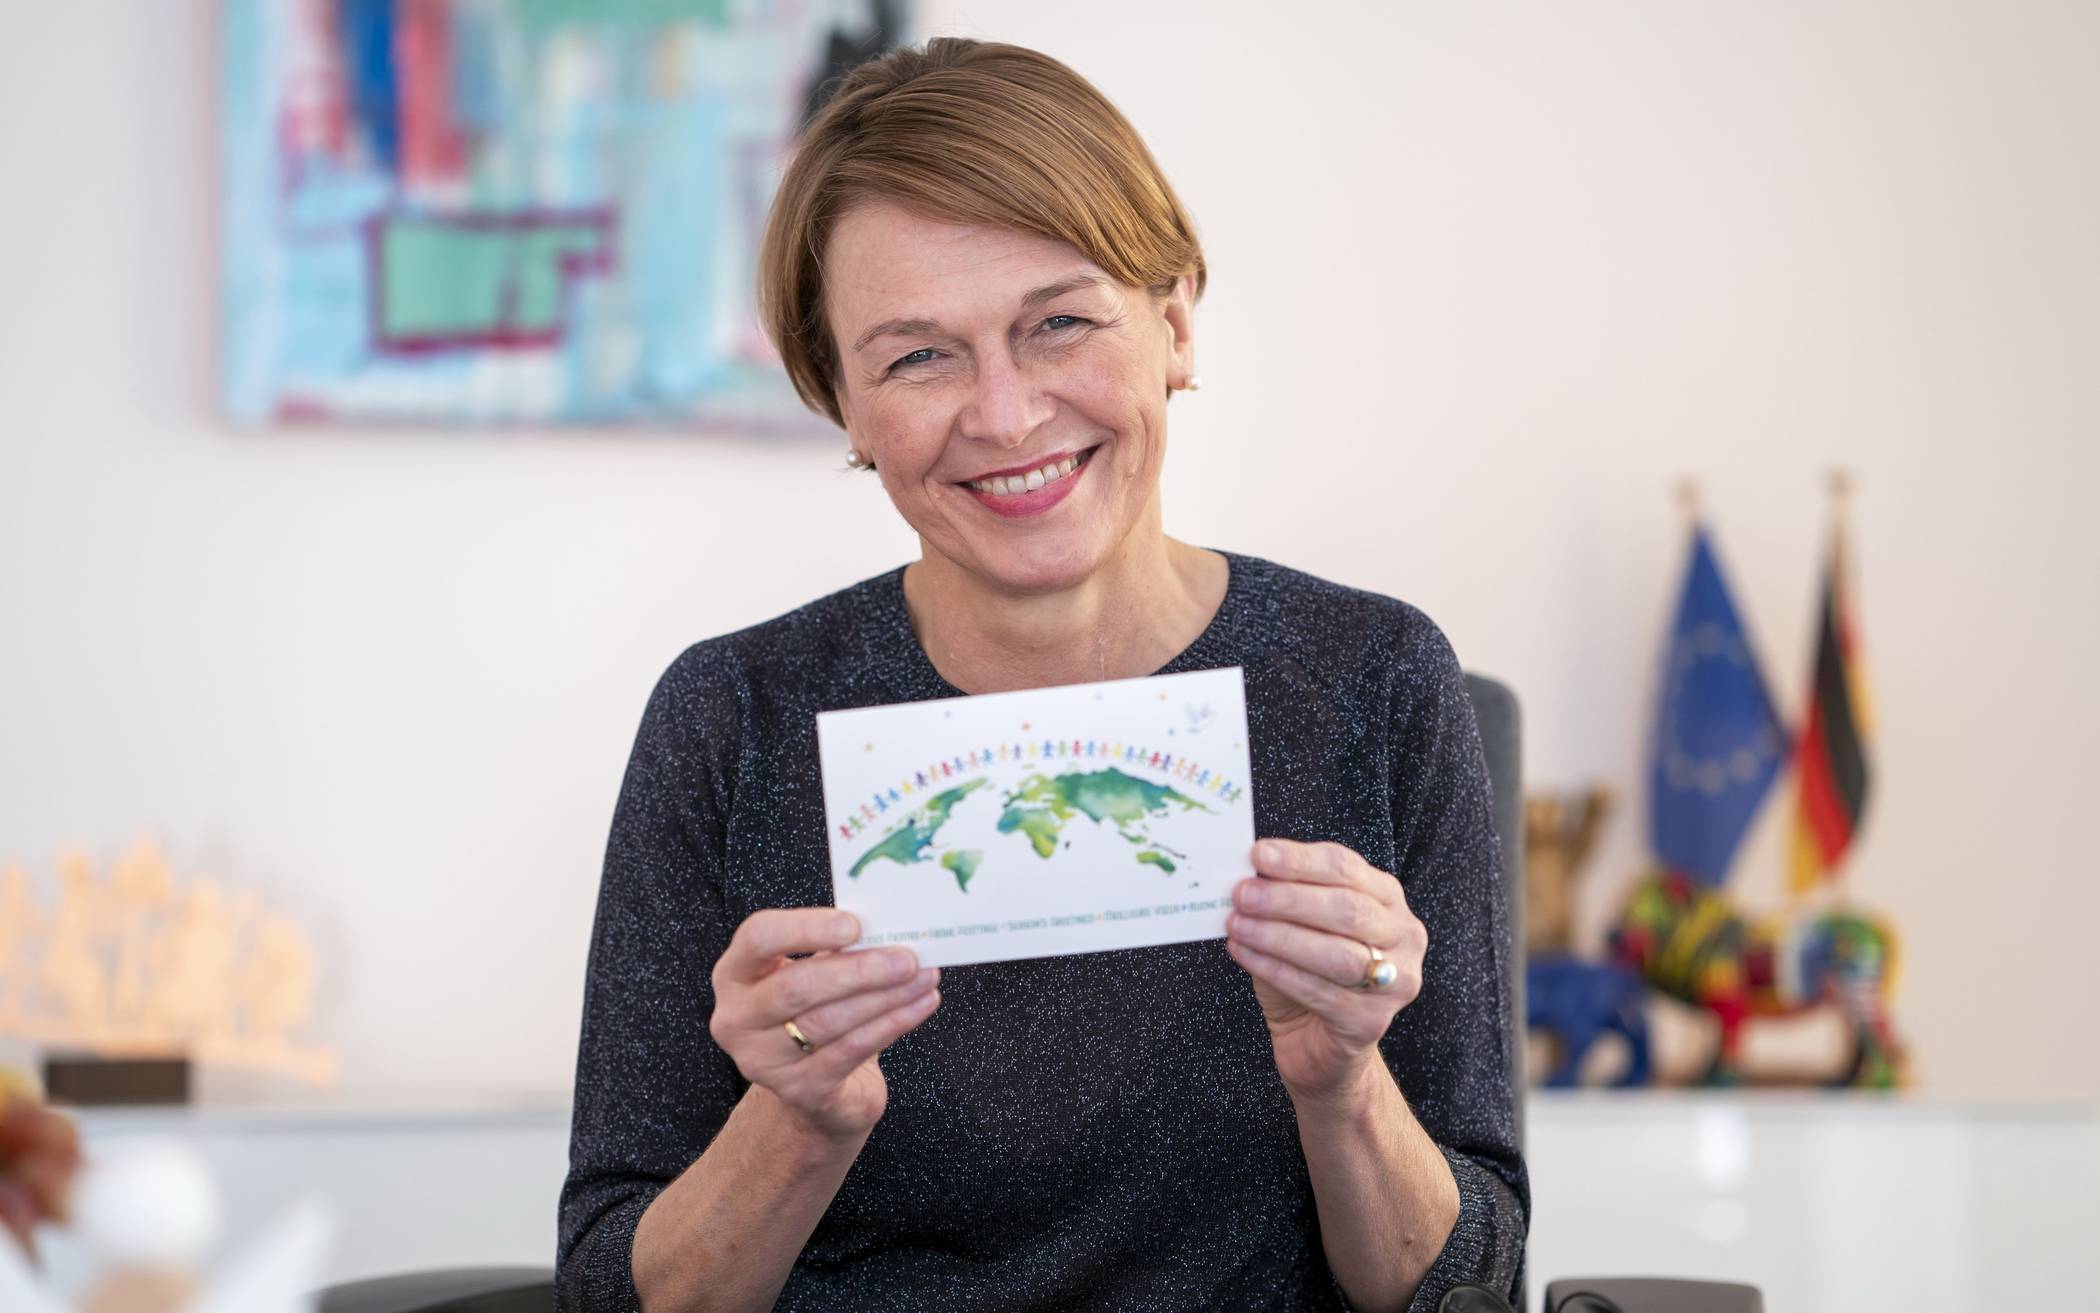  Elke Büdenbender, Ehefrau des Bundespräsidenten Frank-Walter Steinmeier, mit einer UNICEF-Karte (Archivbild). 